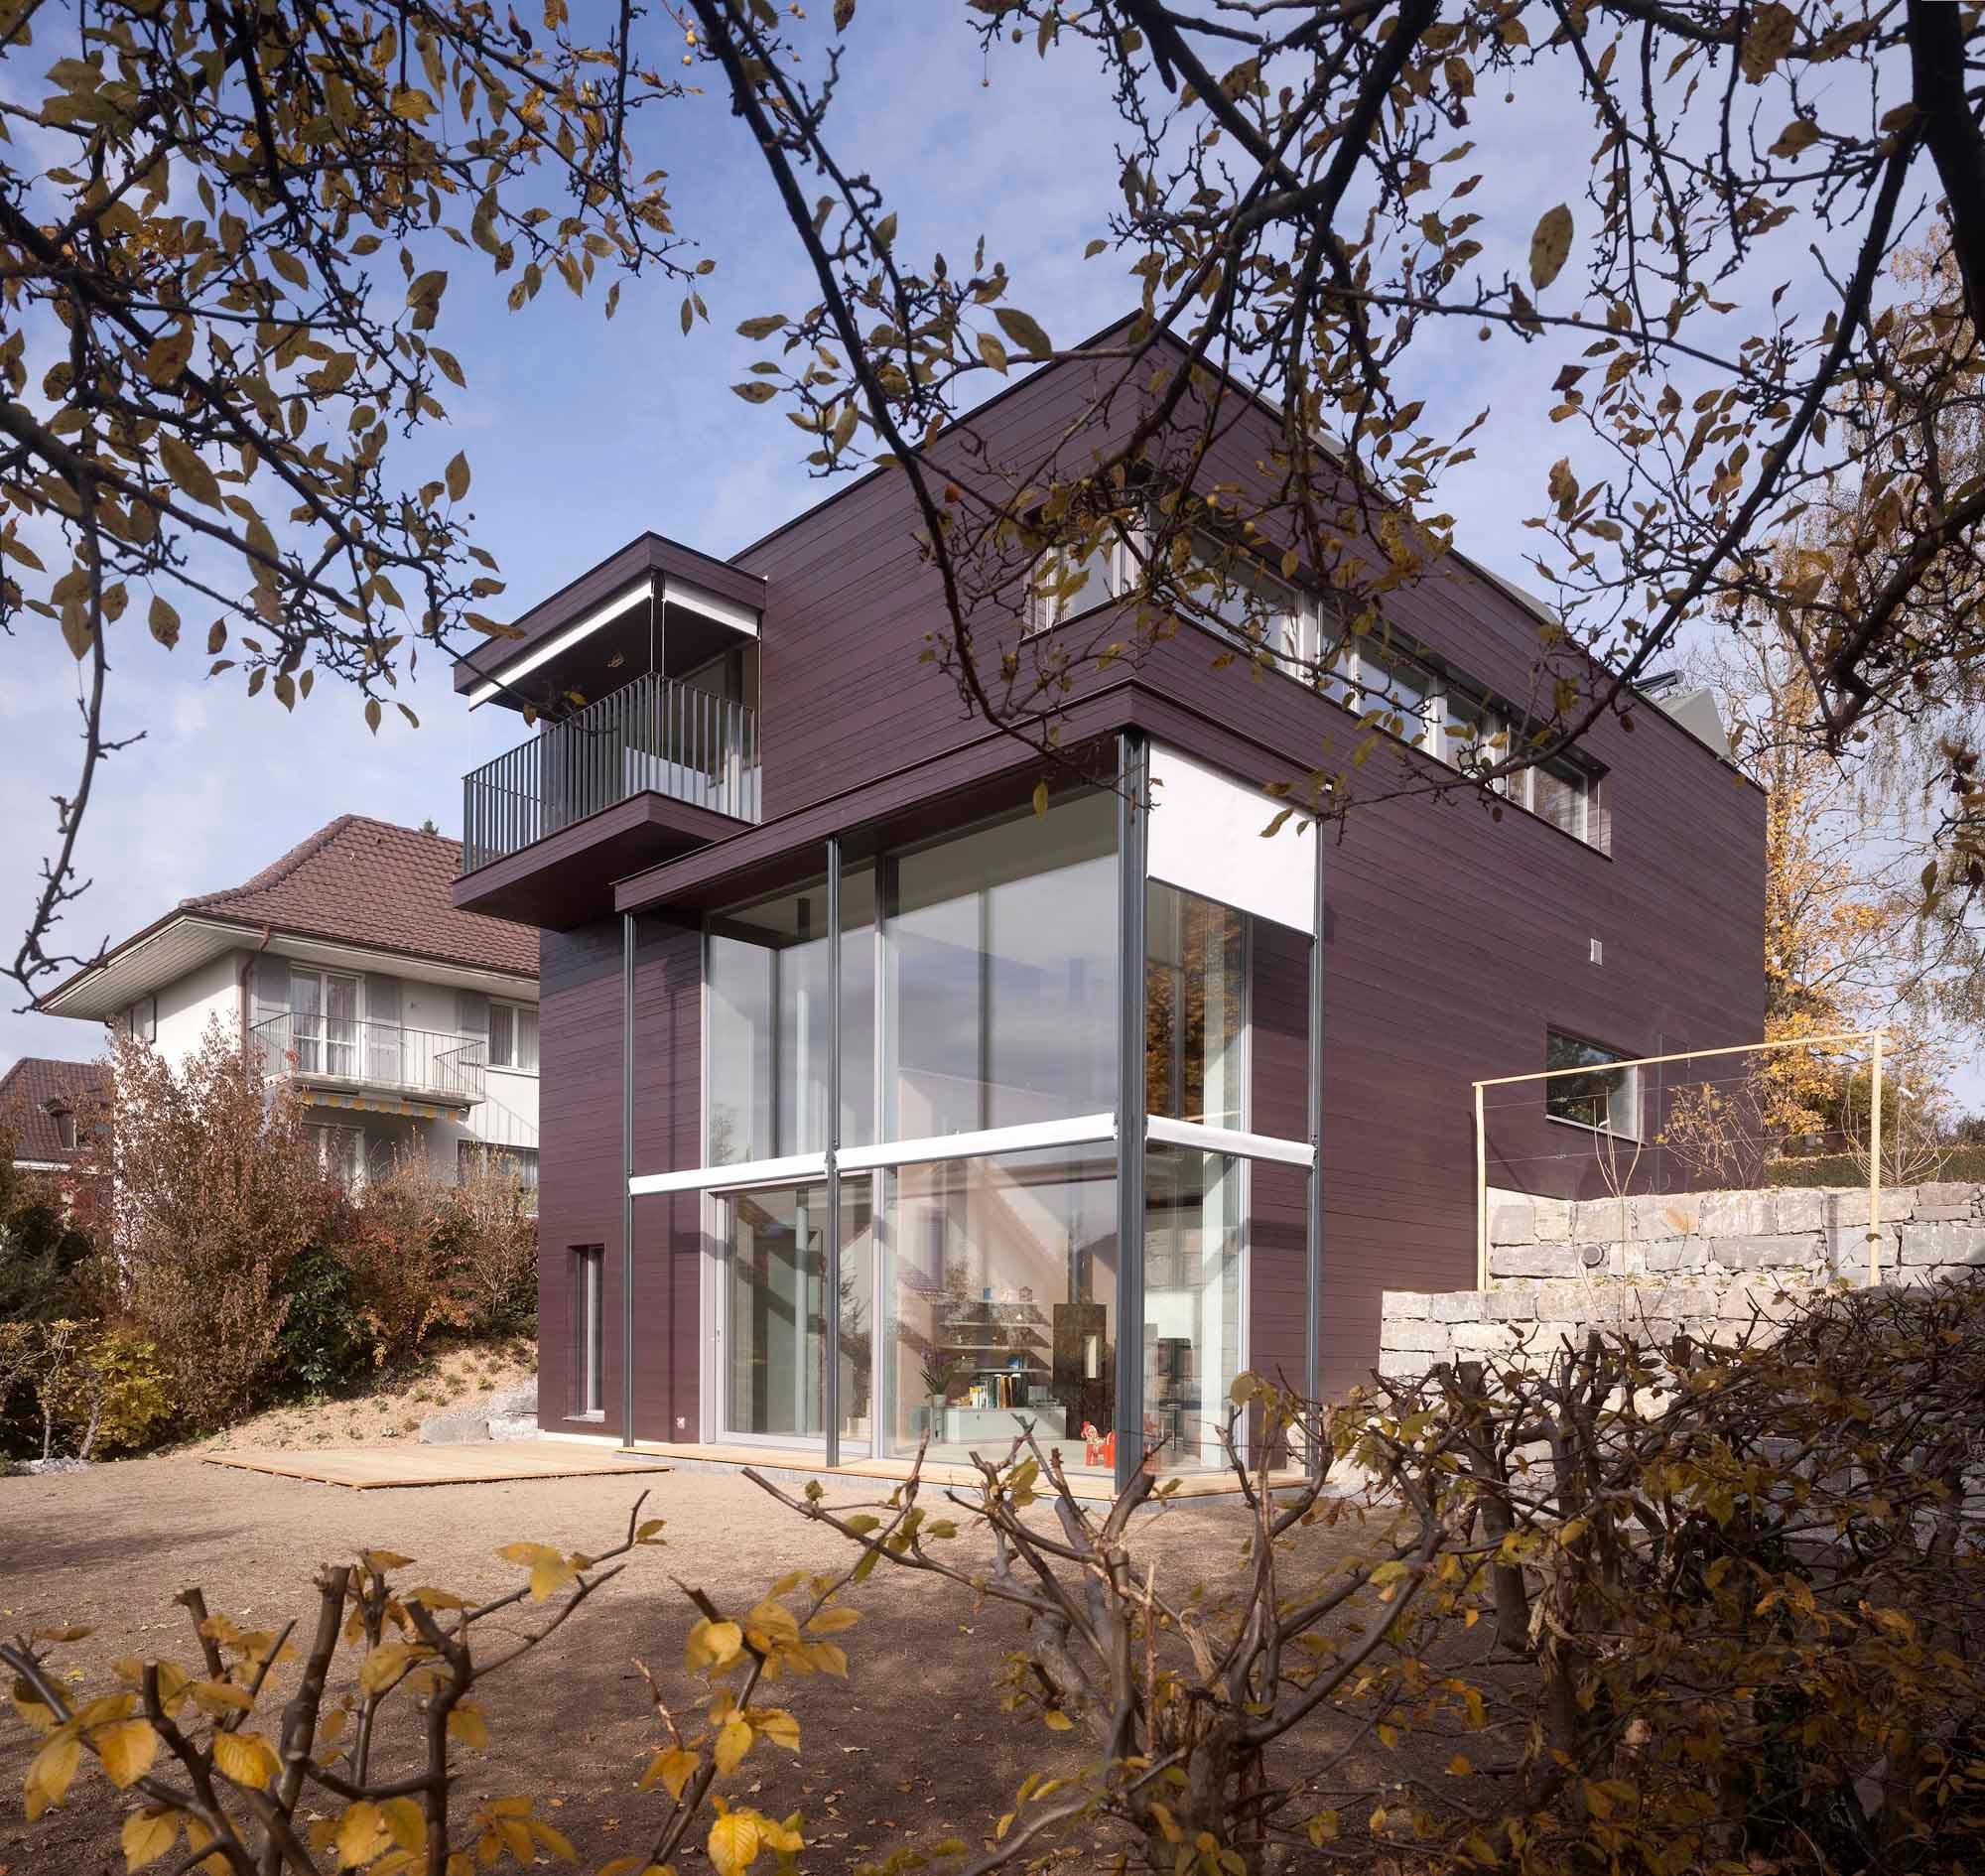 Architektur-Reportage Münsigen Niggli Luder: Aussenansicht des modernen Hauses mit dunkler Fassade